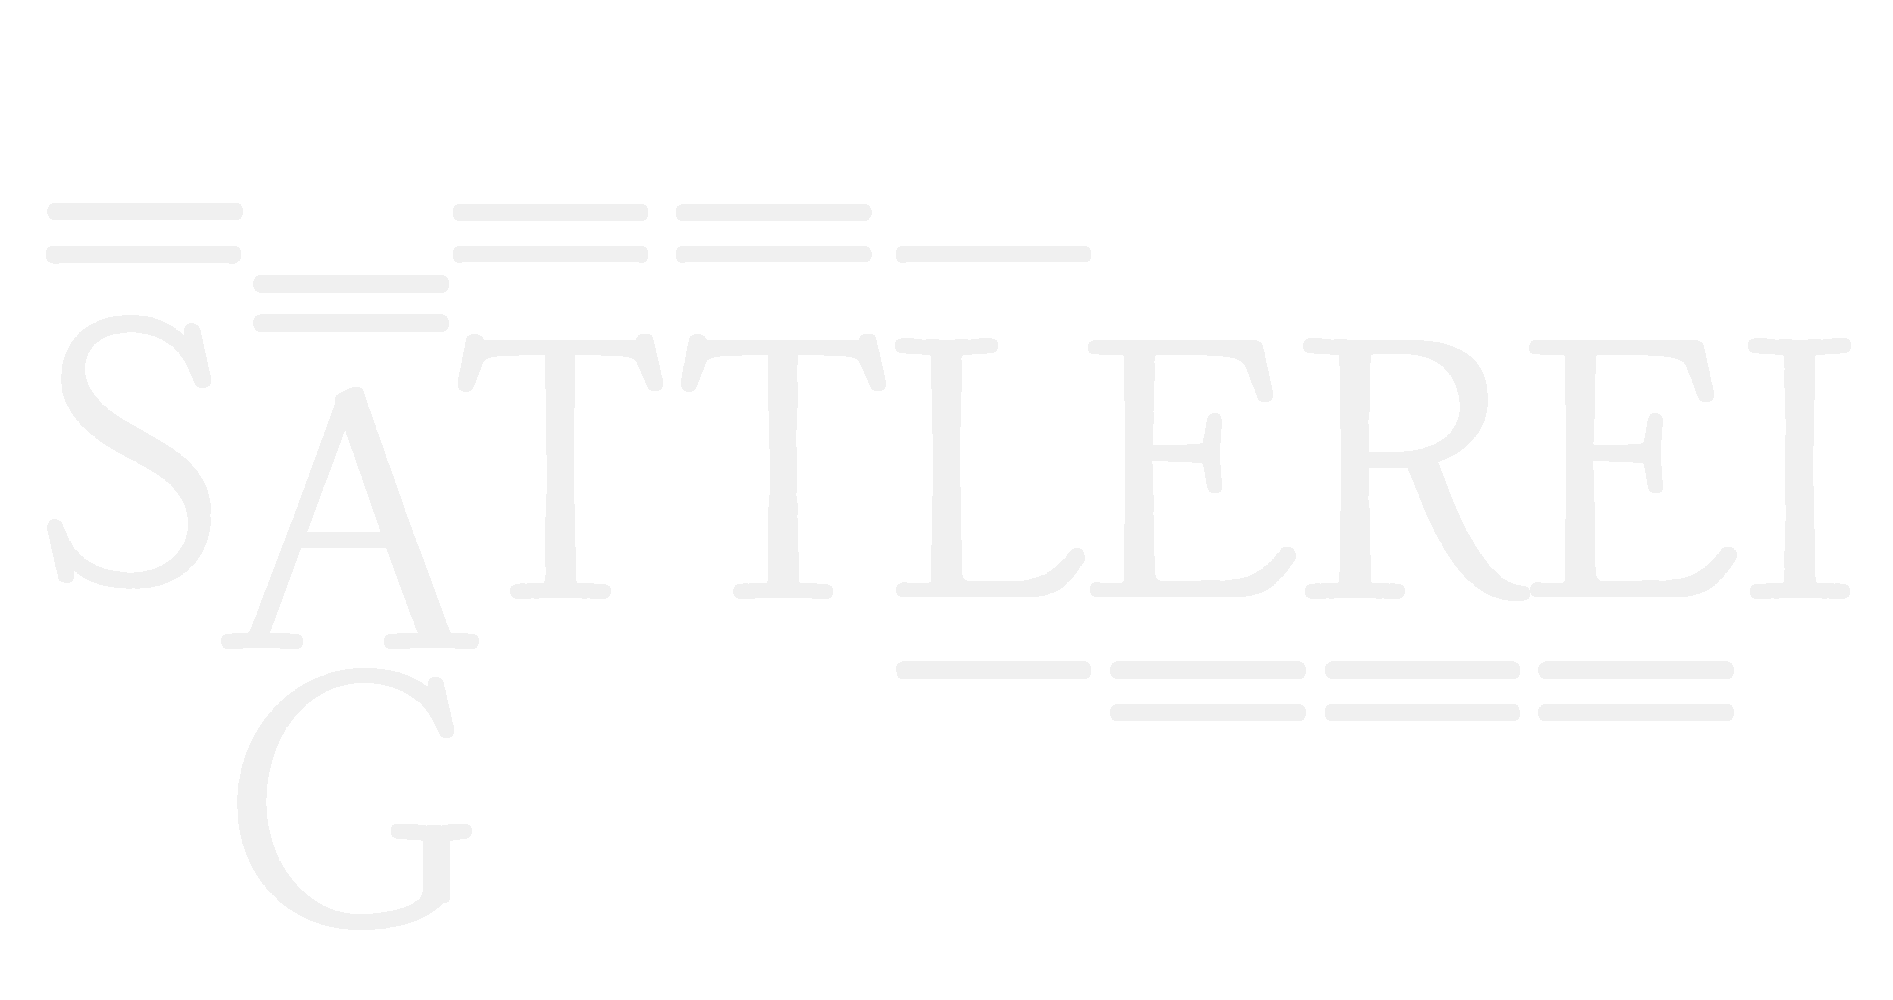 Sattlerei - Polsterei - Näherei